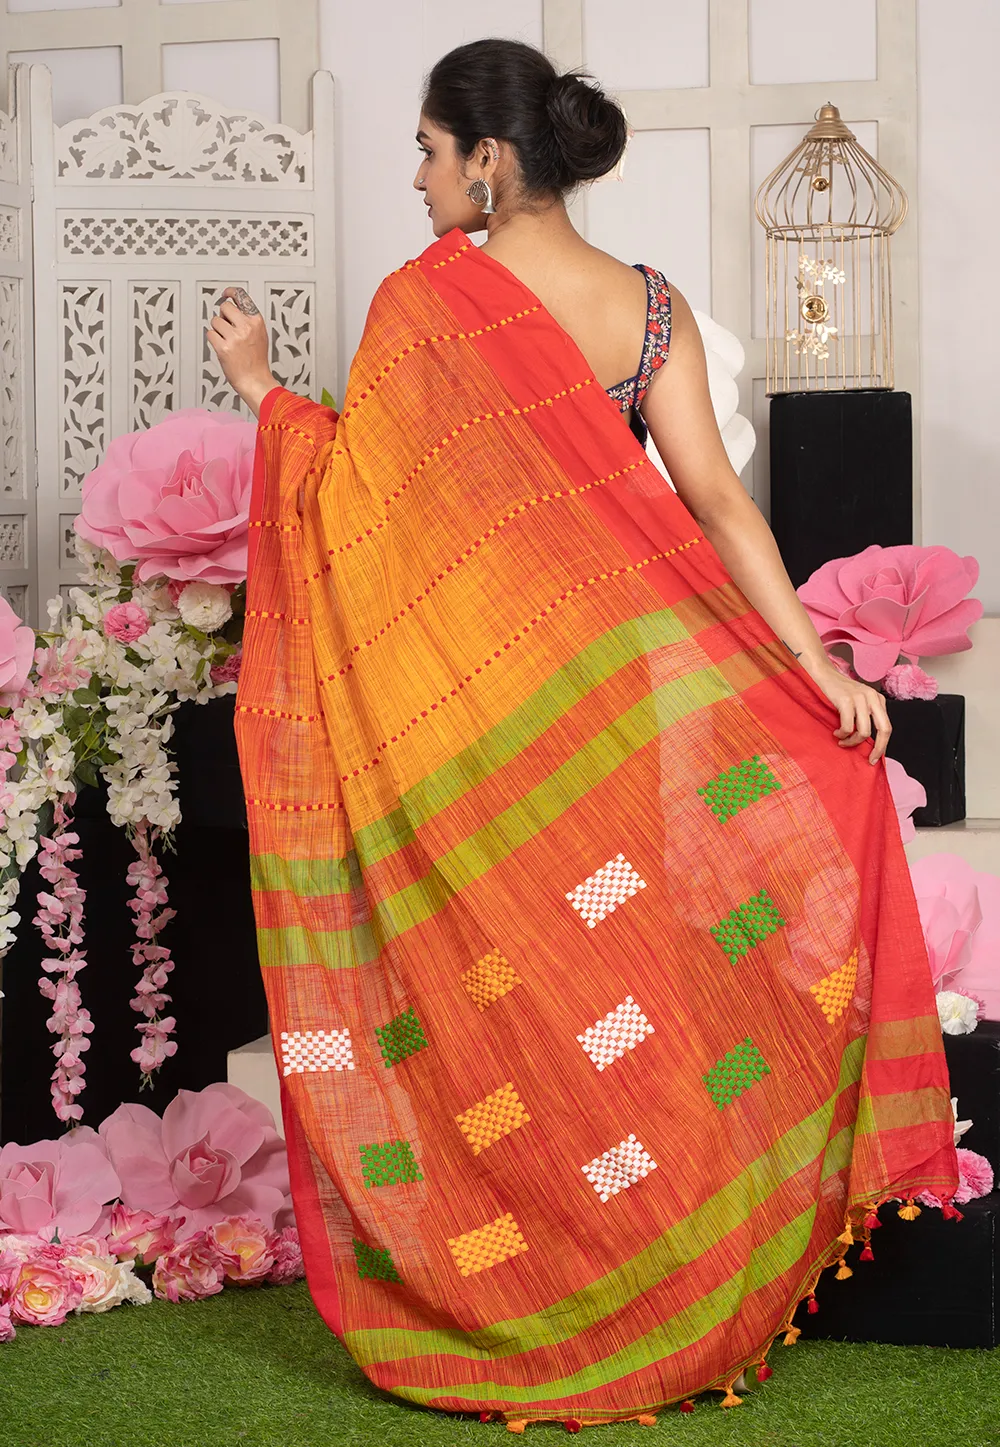 red handloom saree with contrasting border multicolor motifs 6021264a8bdb1 1612785226 1